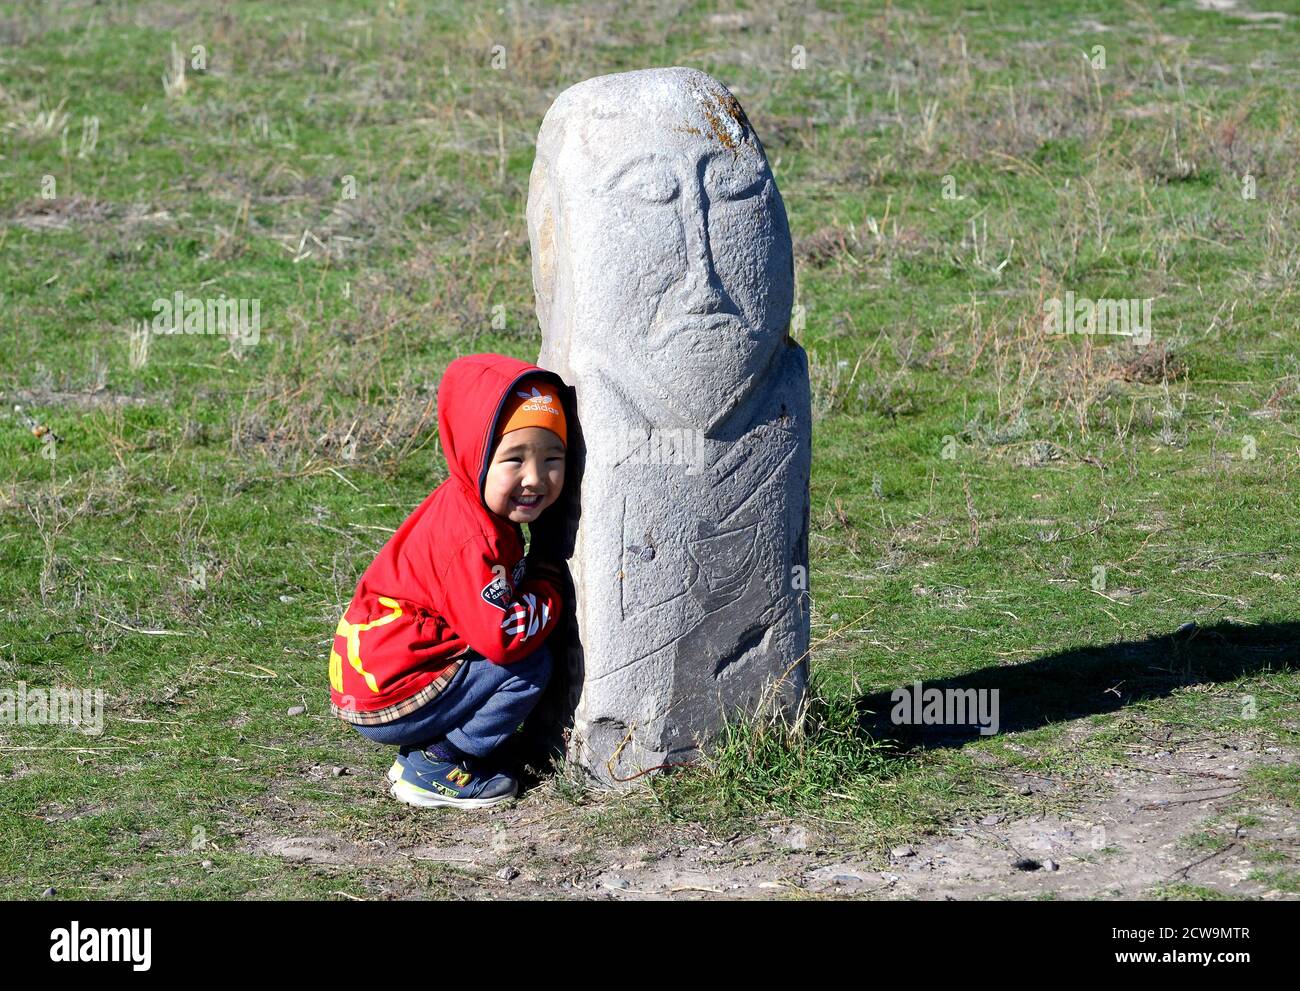 Bambino kirghiso che si nasconde dietro un antico bal-bal, una lapide usata dalle tribù nomadi turche vicino a Balasagun in Kirghizistan, Asia centrale. Ragazzo sorridente. Foto Stock